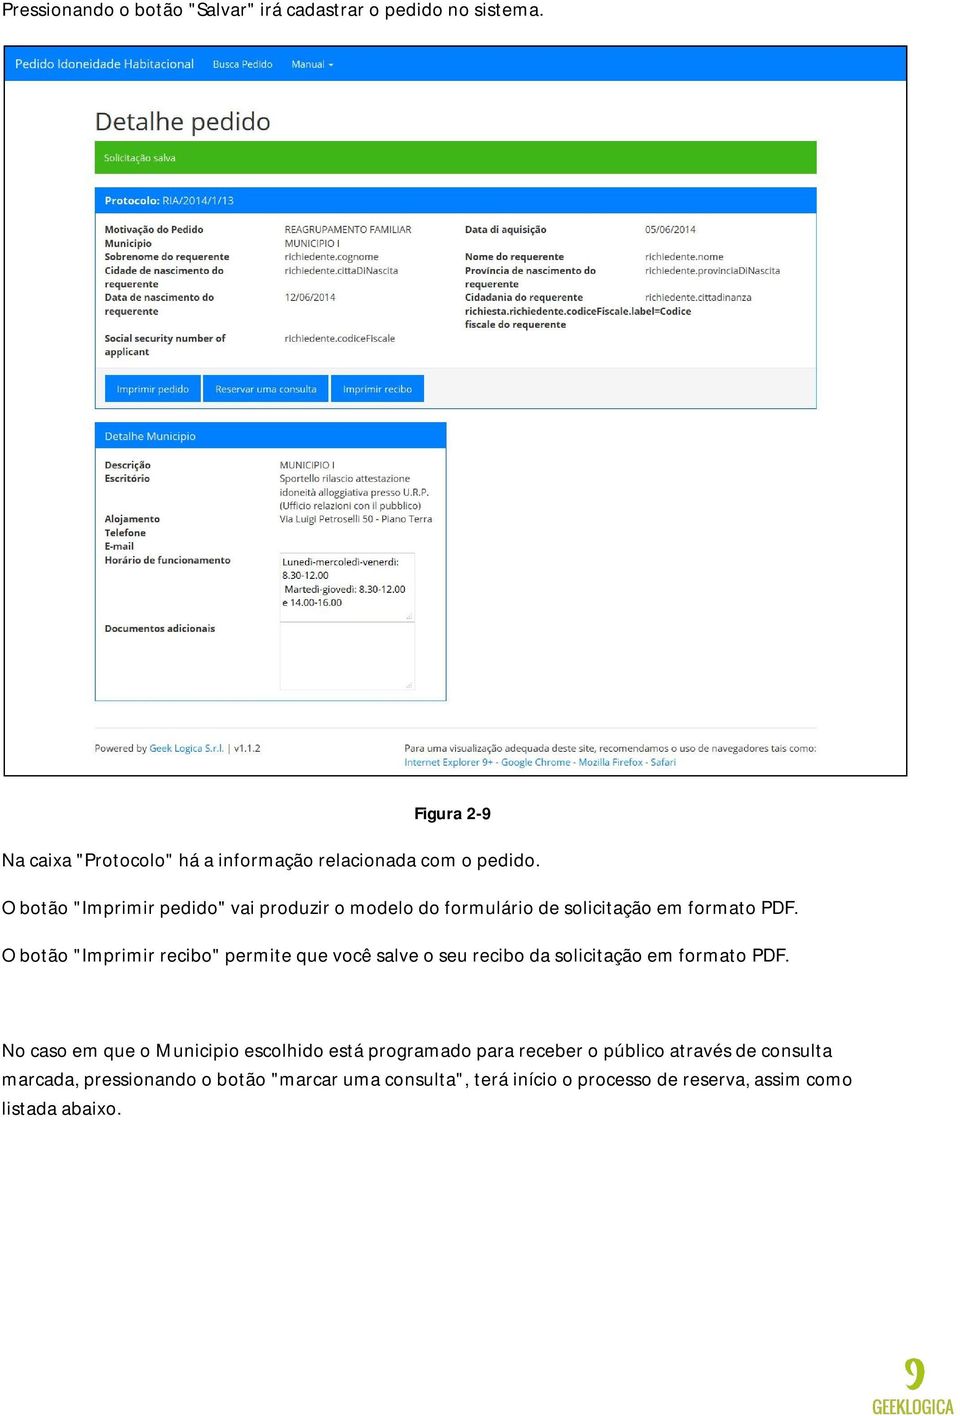 O botão "Imprimir pedido" vai produzir o modelo do formulário de solicitação em formato PDF.